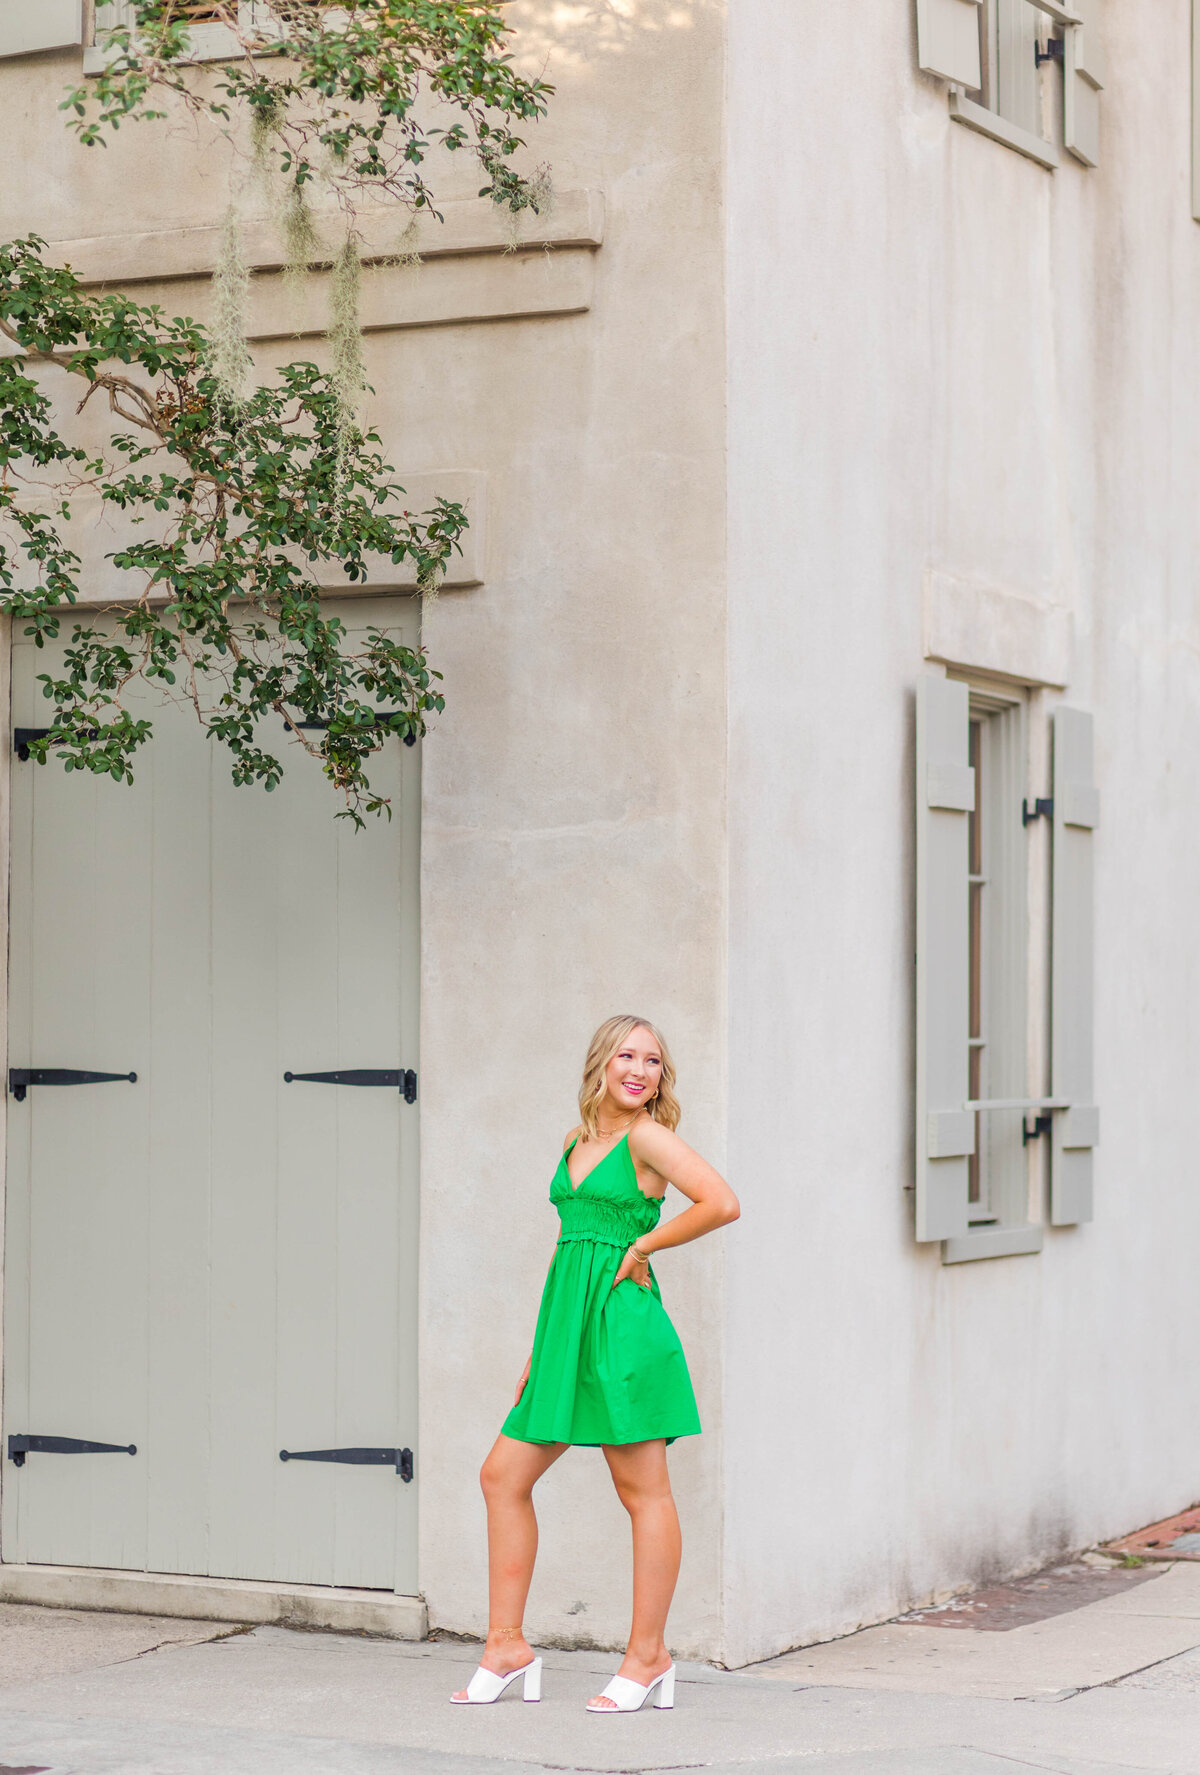 senior girl smiling in green dress